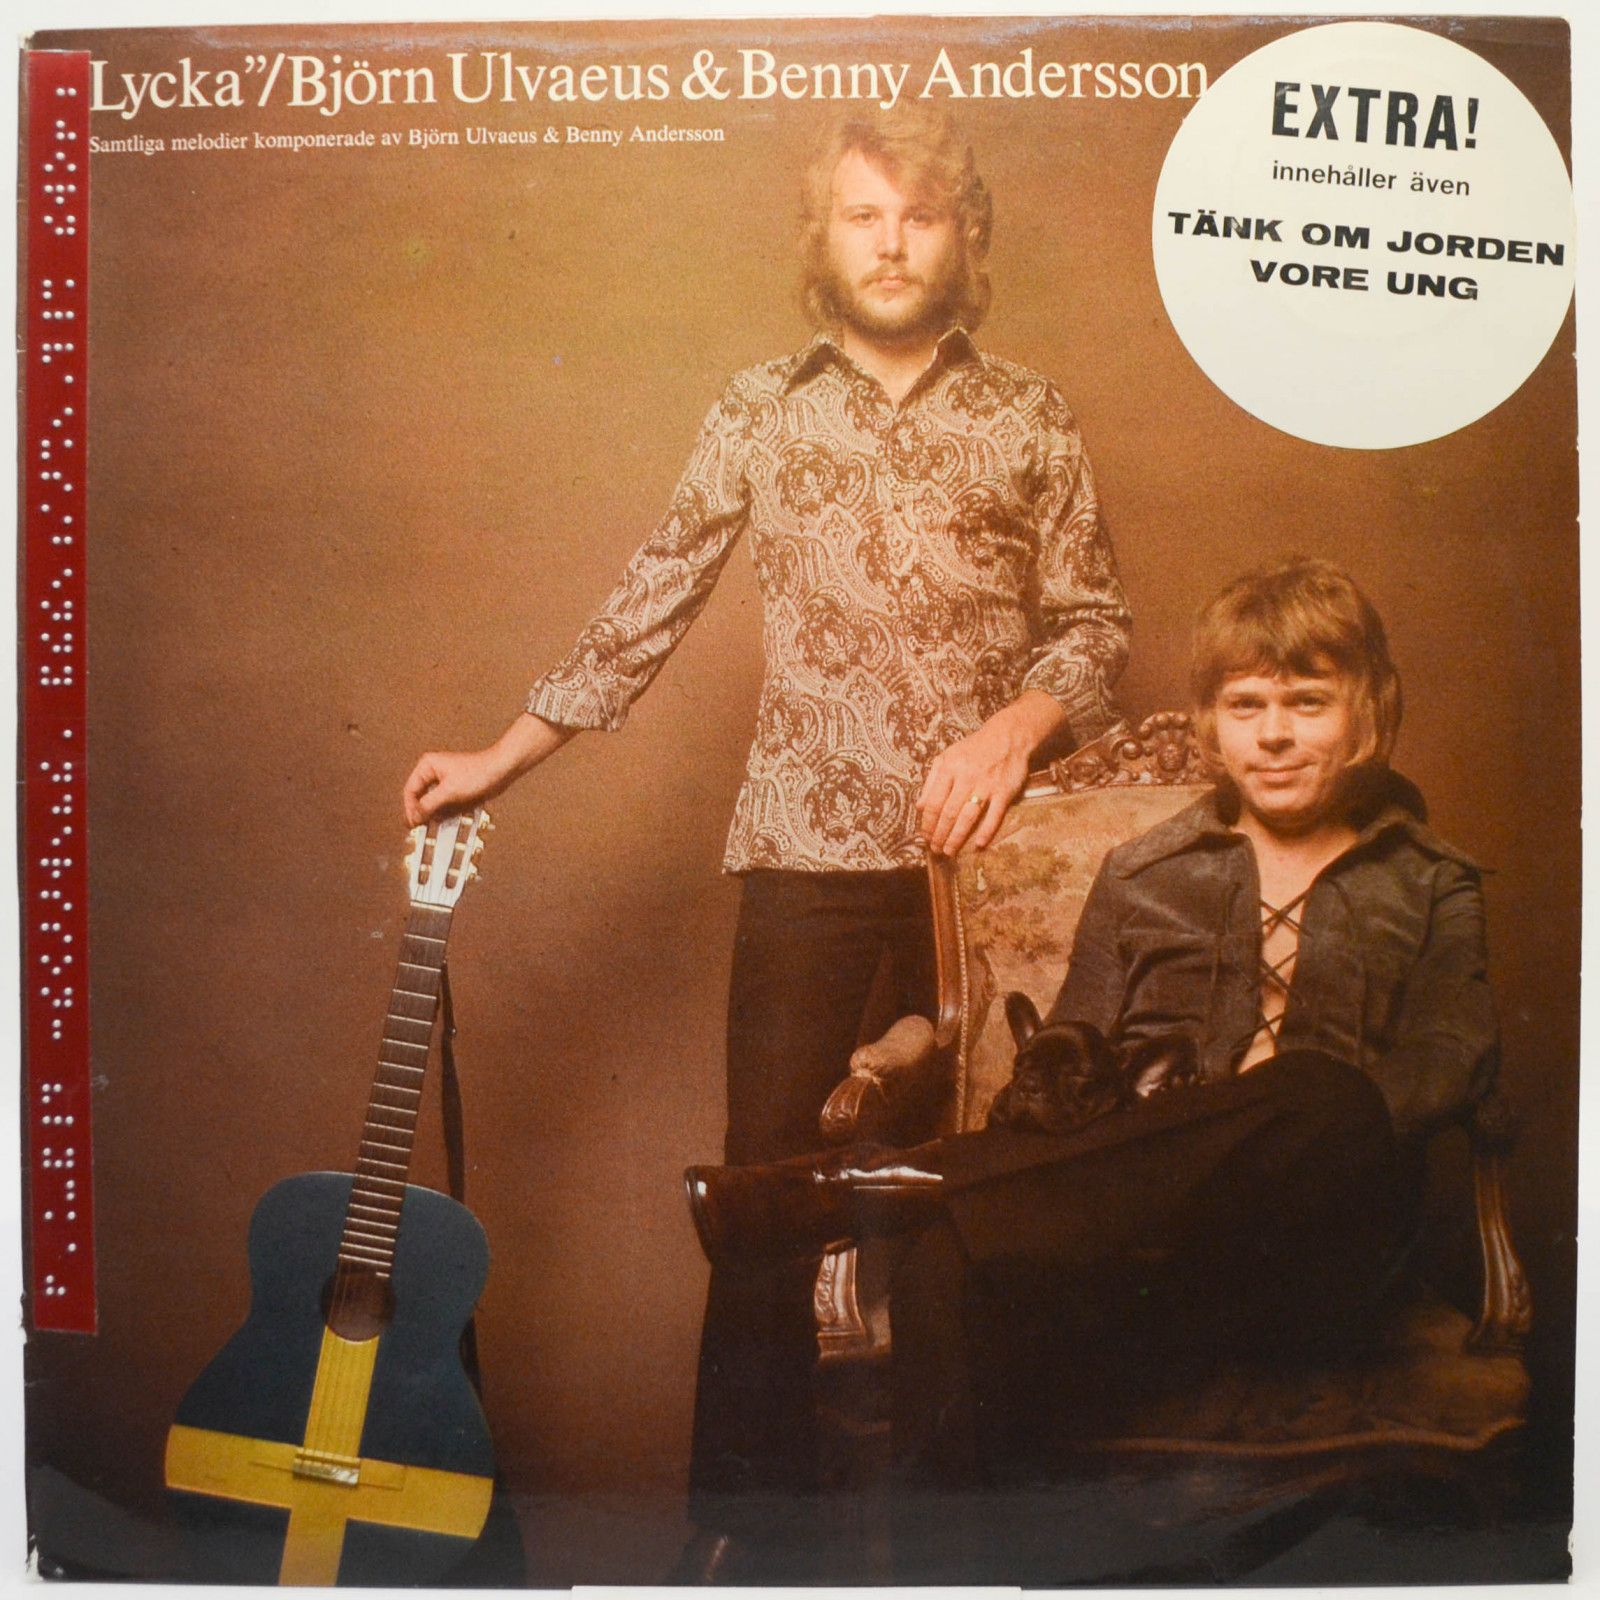 Björn Ulvaeus & Benny Andersson — "Lycka" (Sweden), 1970